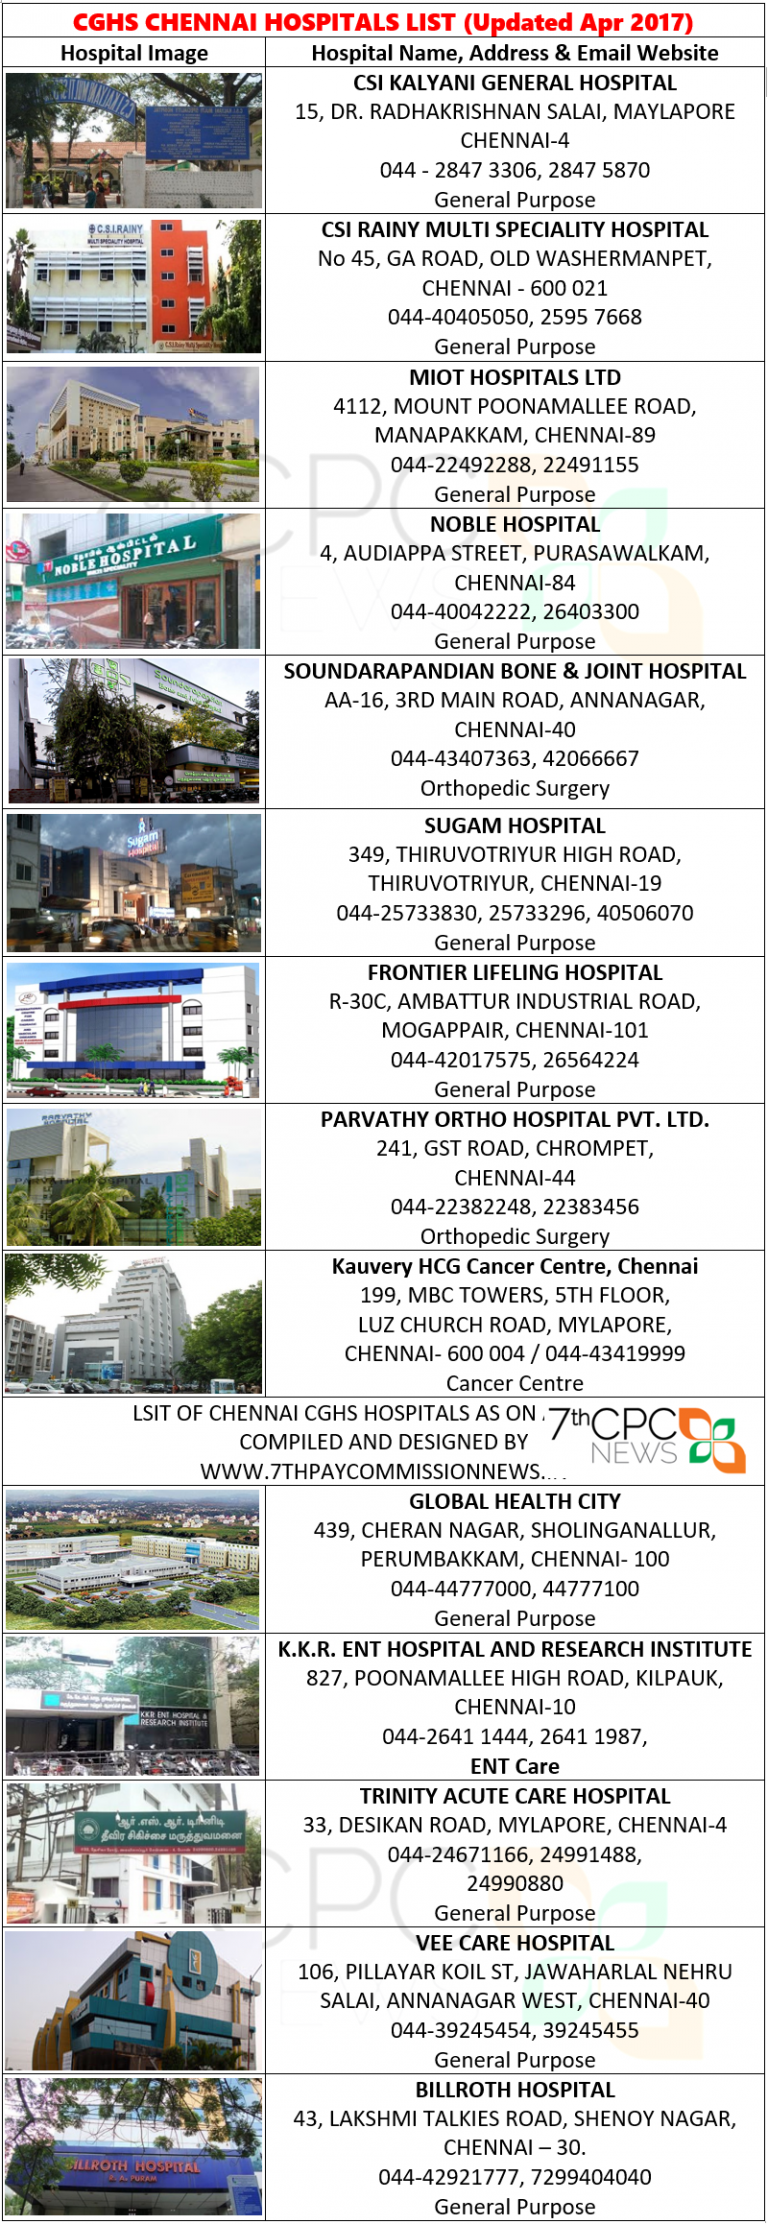 CGHS hospital list